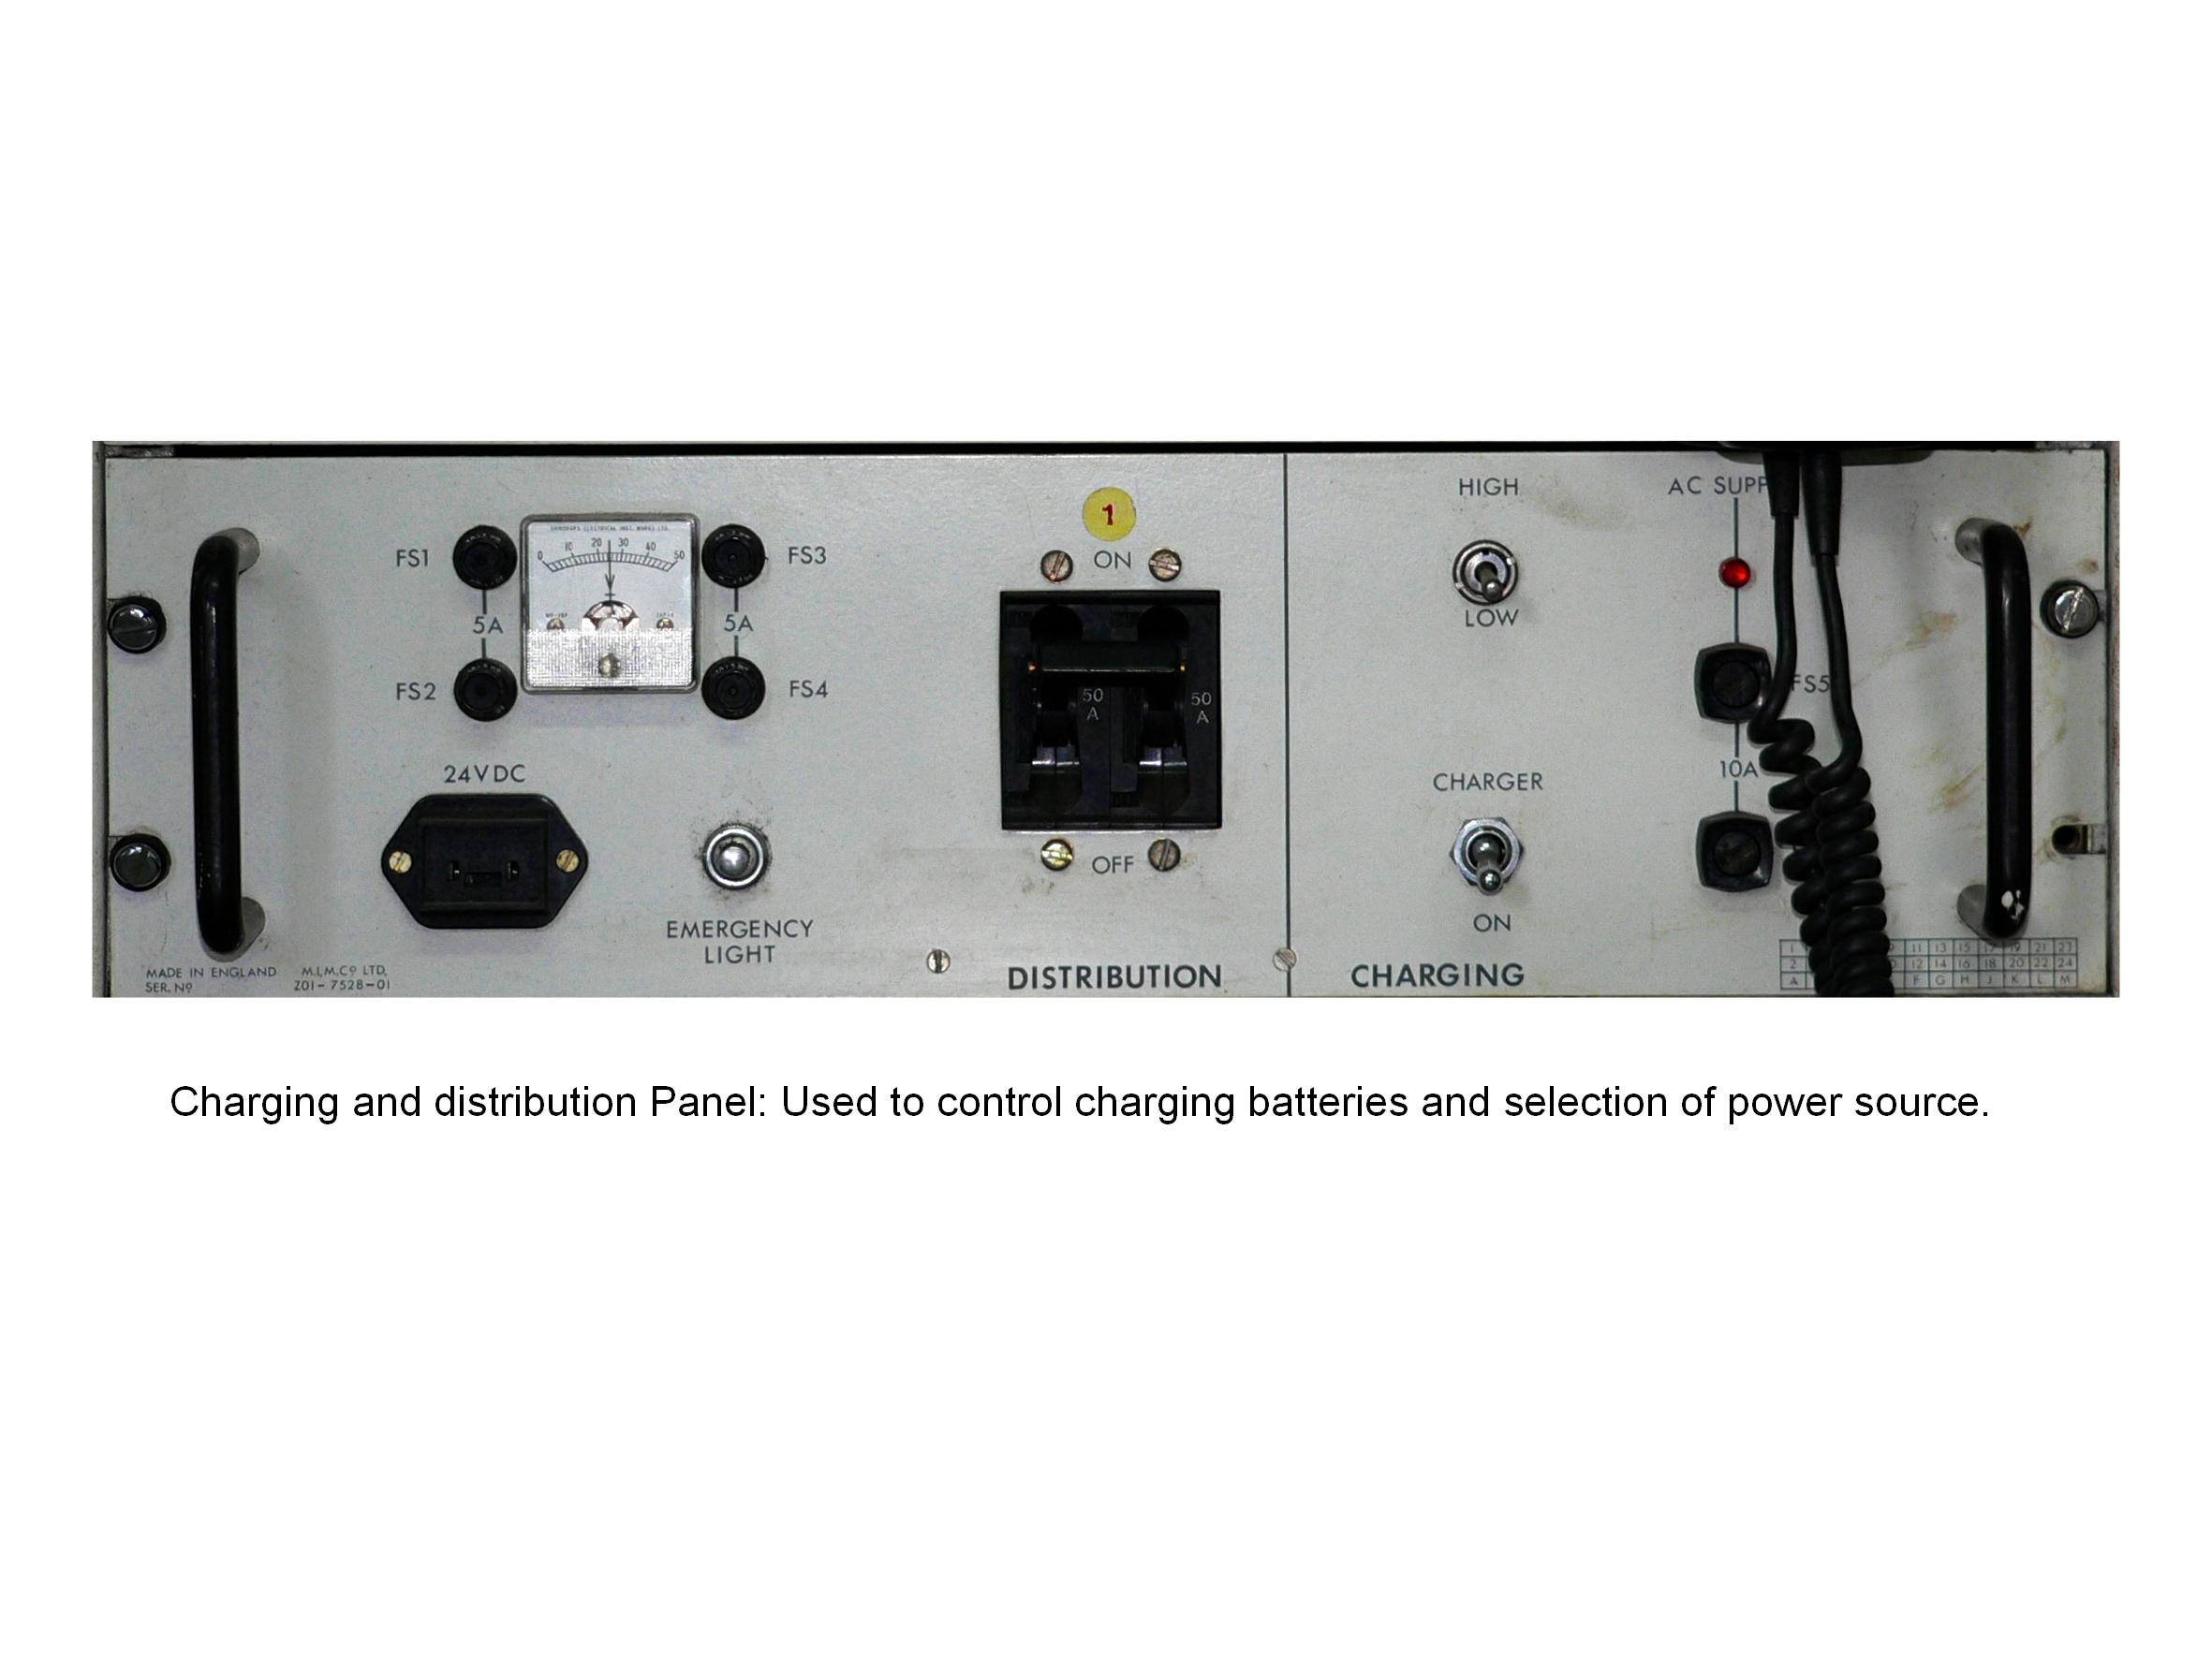 Charging and Distribution panel